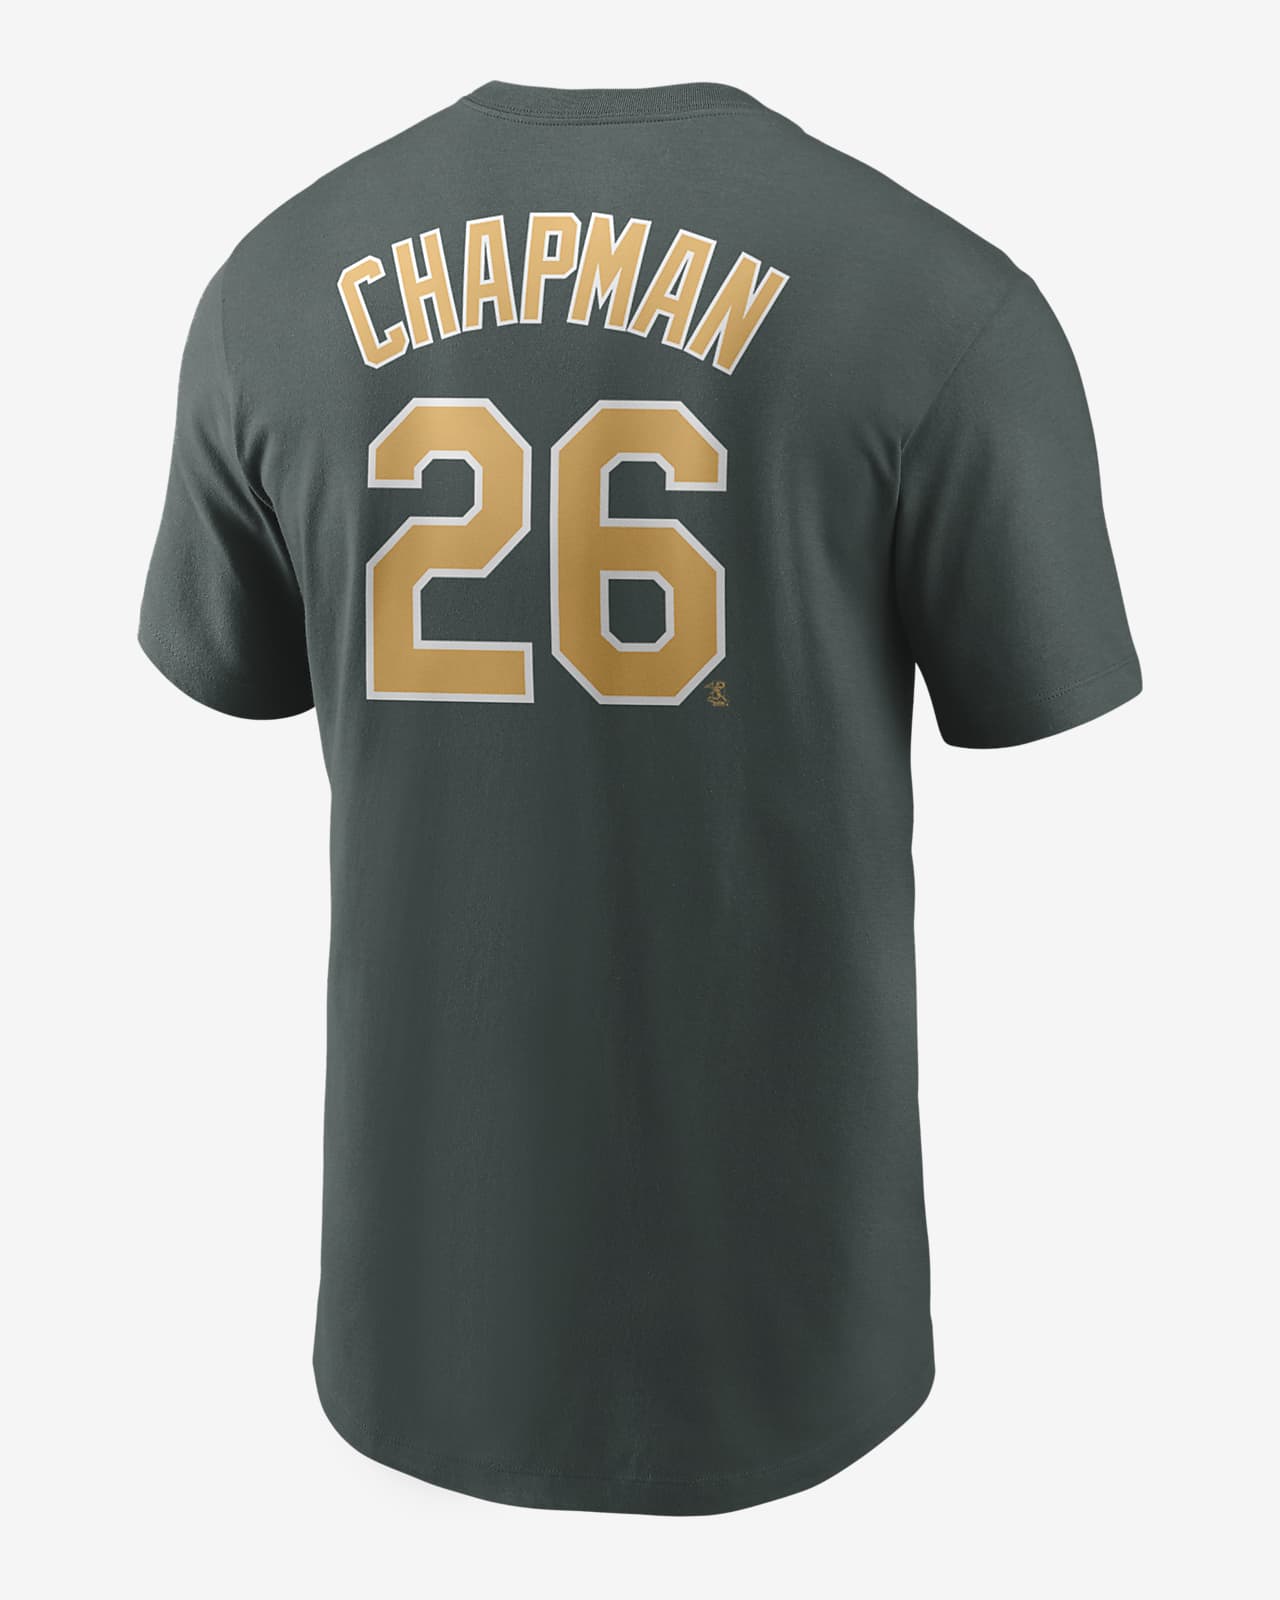 Abundante Propio De ninguna manera Playera para hombre MLB Oakland Athletics (Matt Chapman). Nike.com